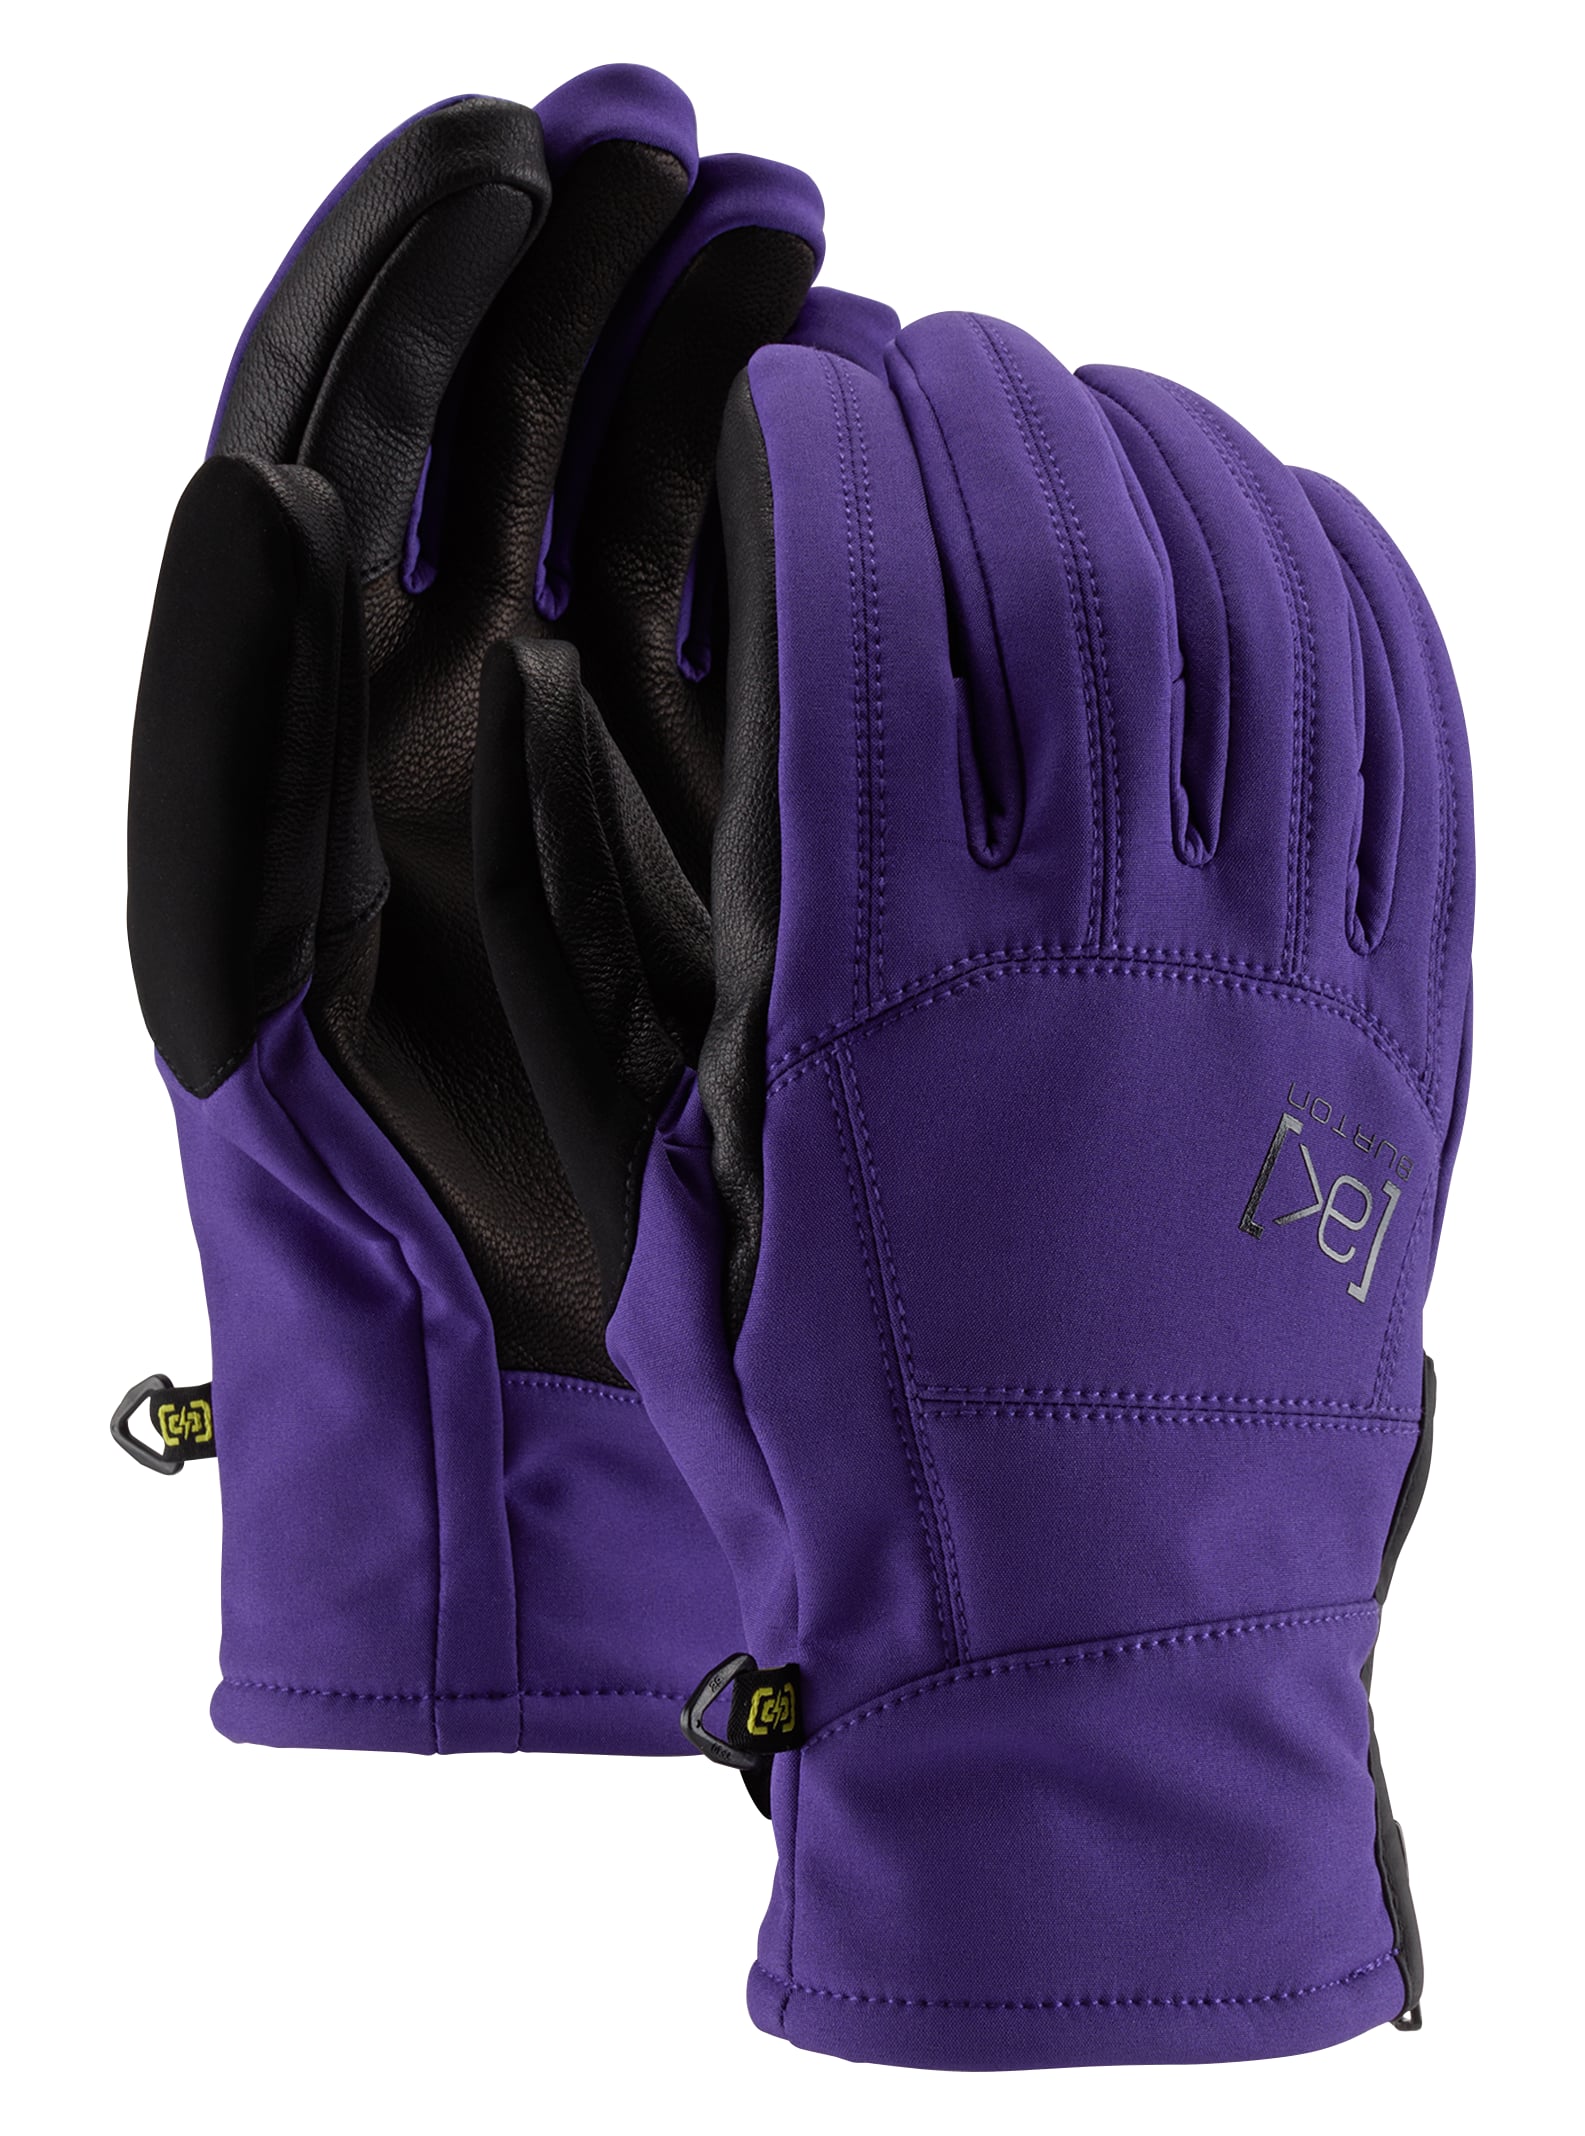 Burton Men's [ak] Tech Glove, M